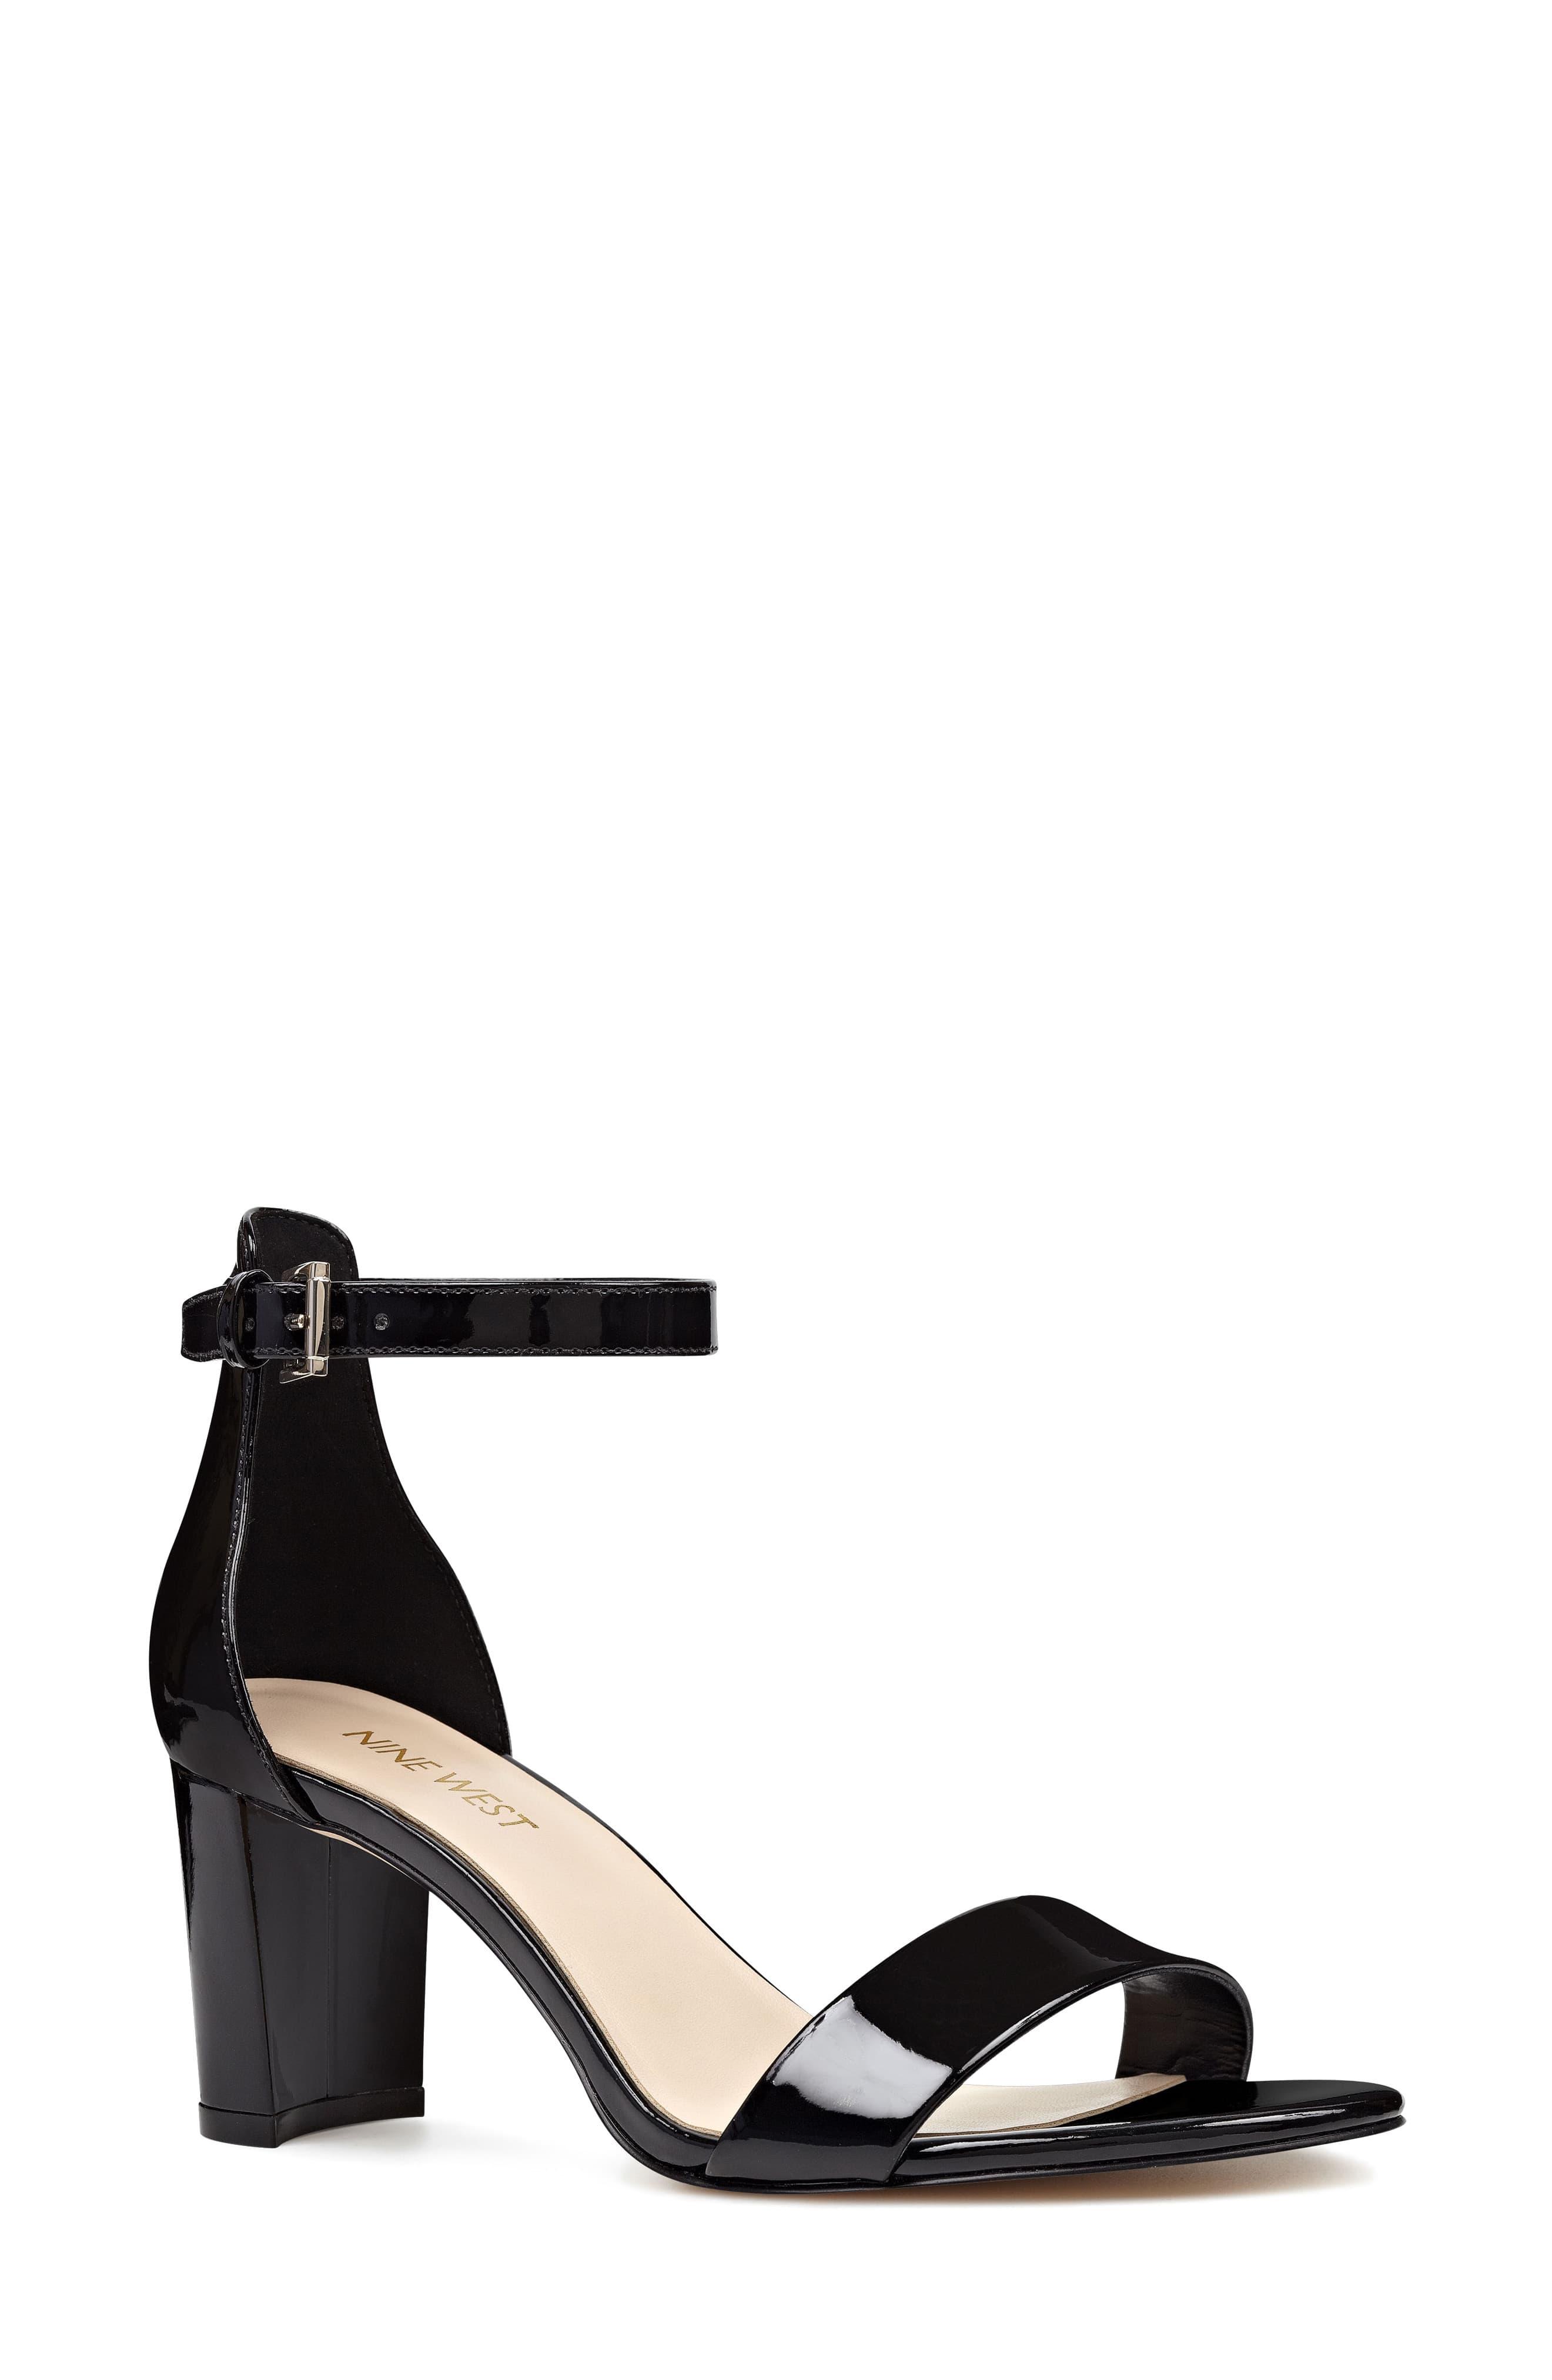 Nine West Pruce Ankle Strap Sandal in Black Patent (Black) - Save 42% ...